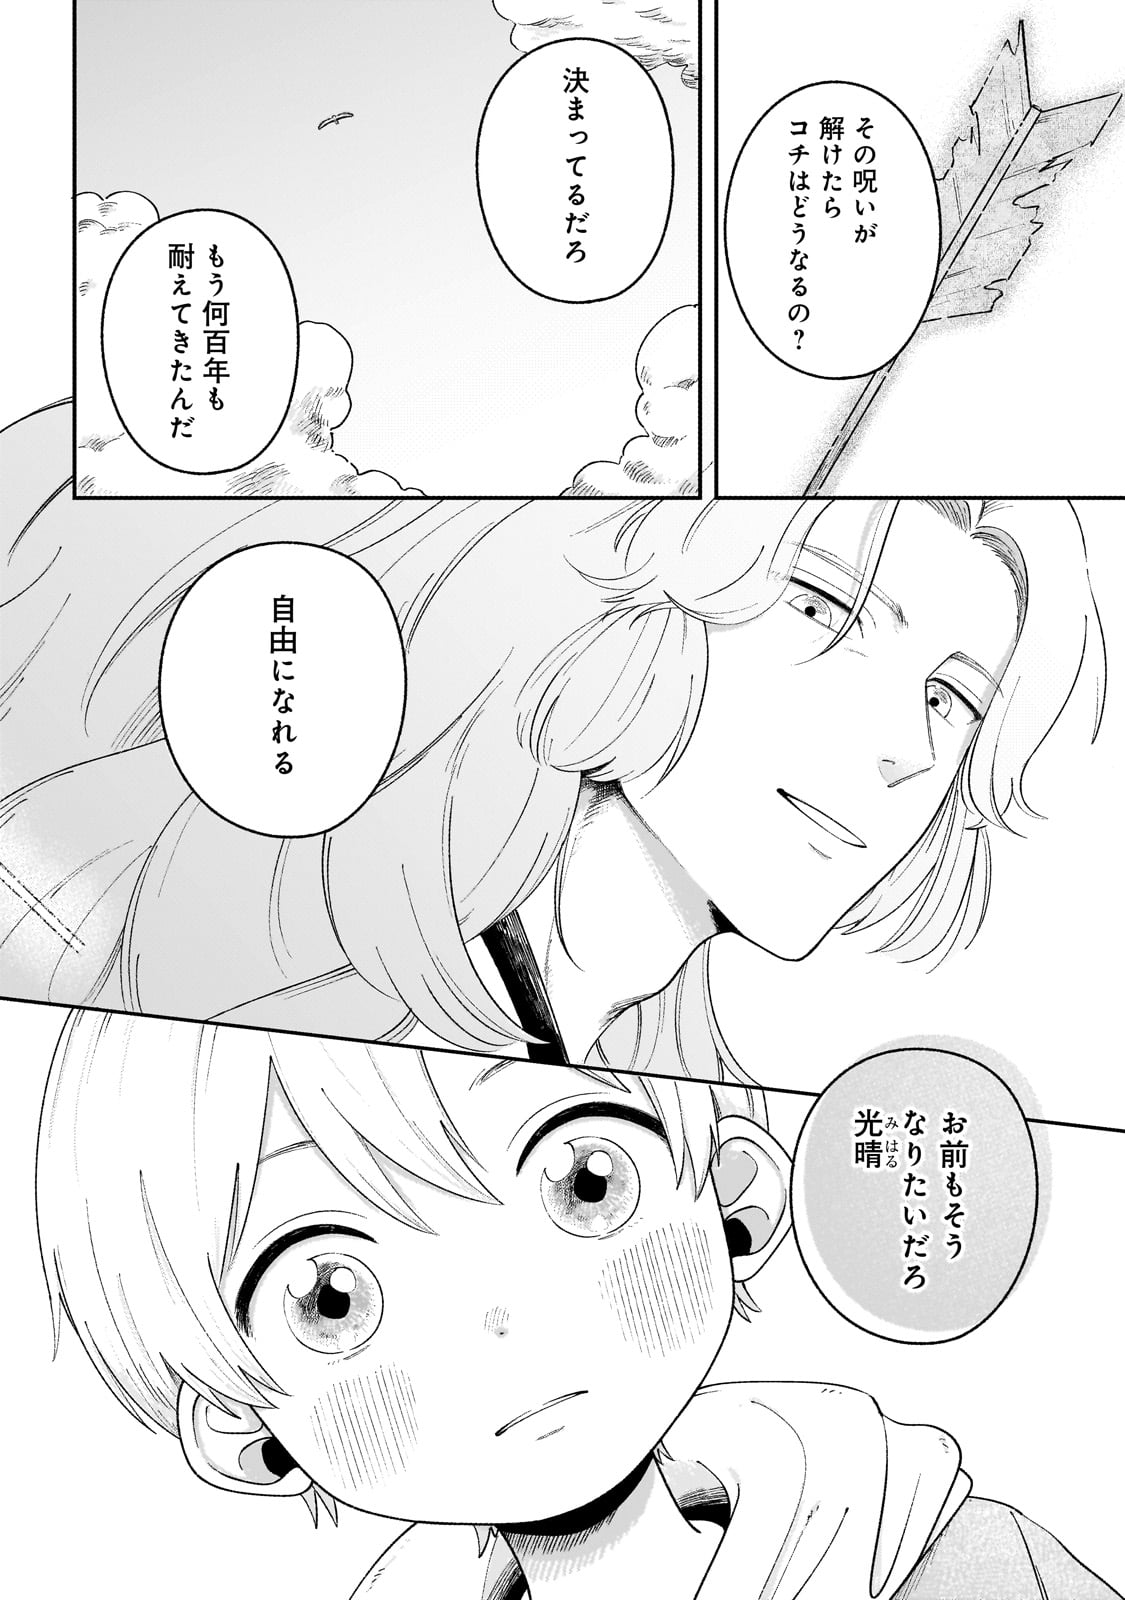 Boku to Ayakashi no 365 Nichi - Chapter 2 - Page 26